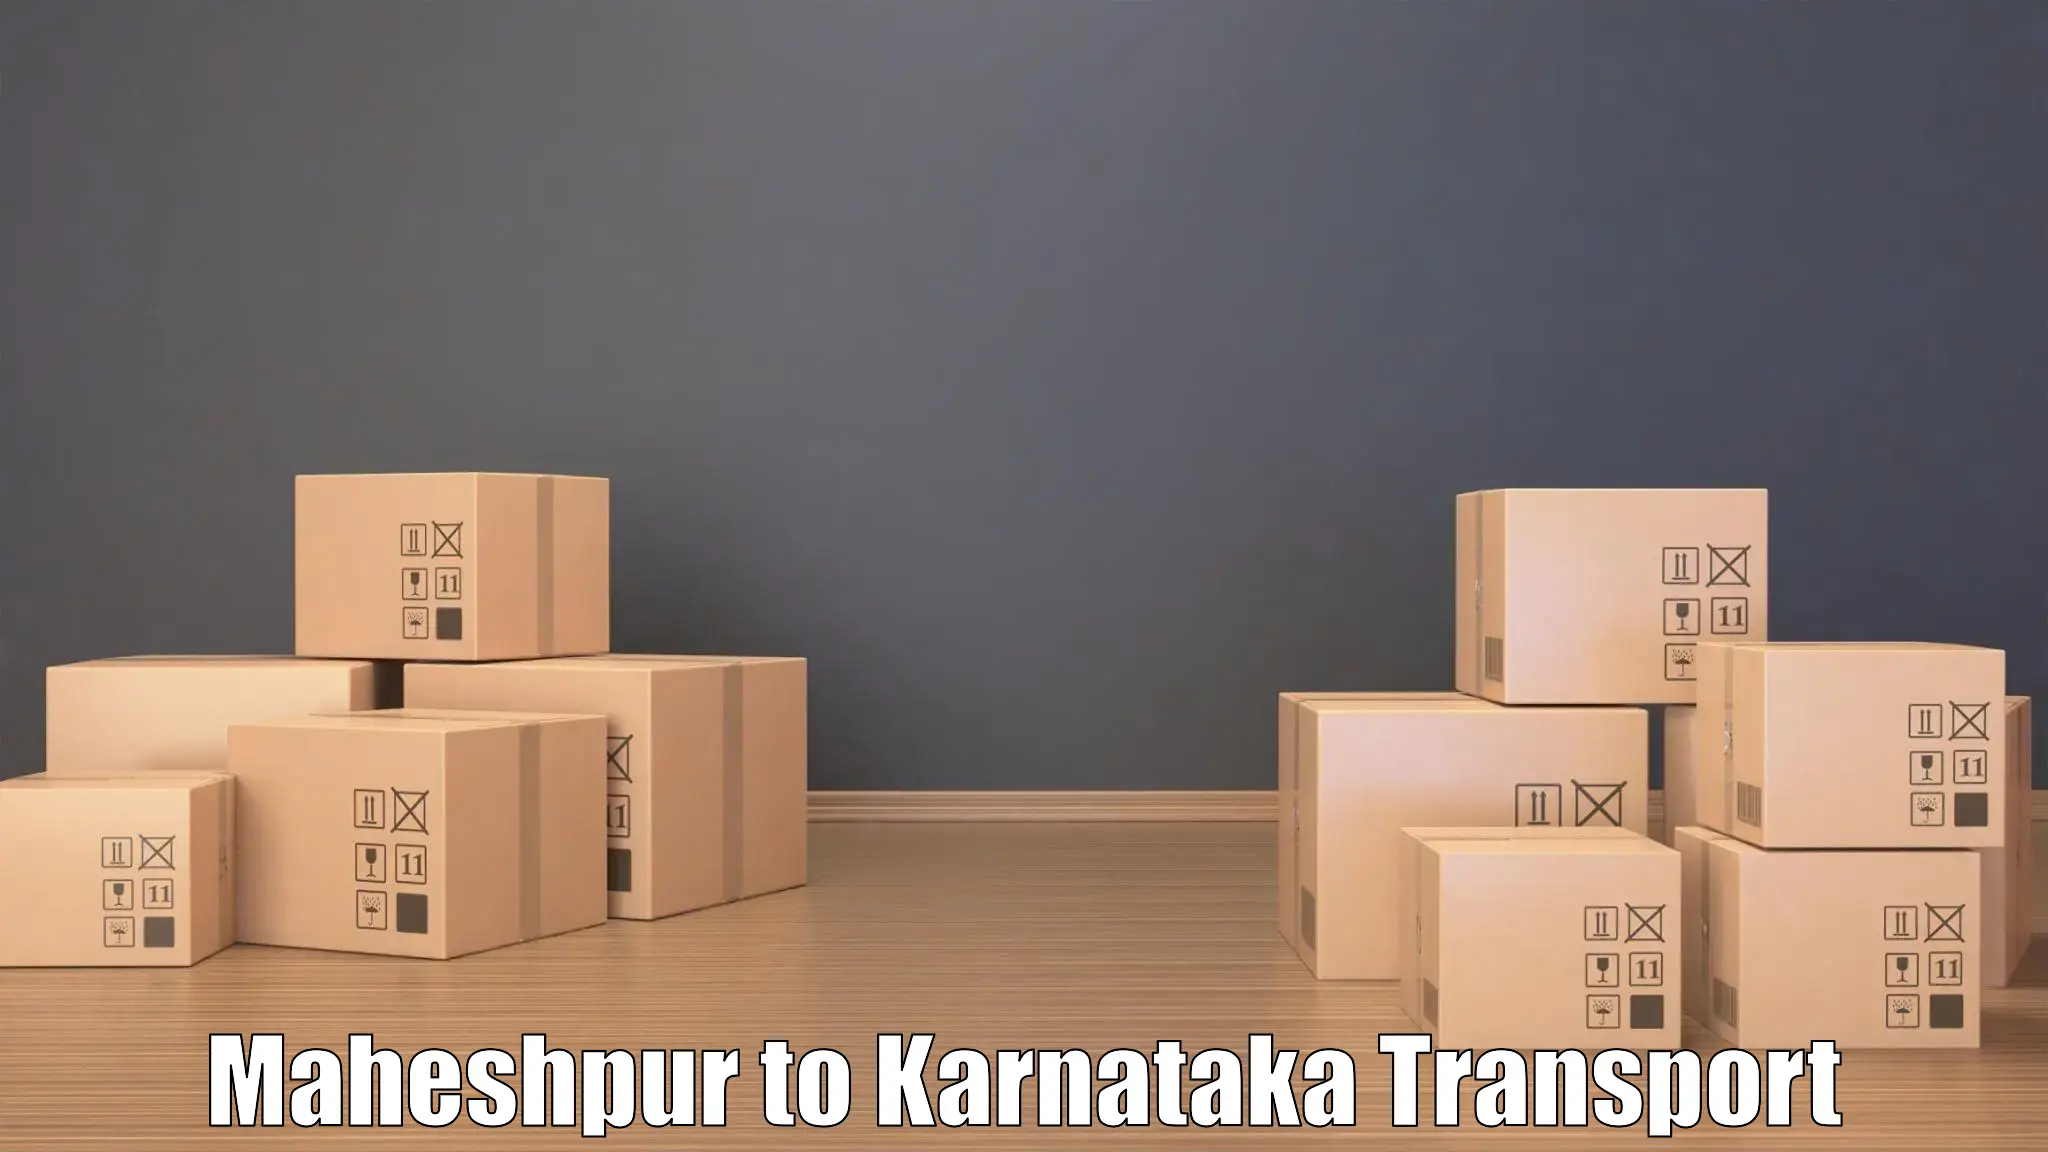 Daily parcel service transport Maheshpur to Channarayapatna